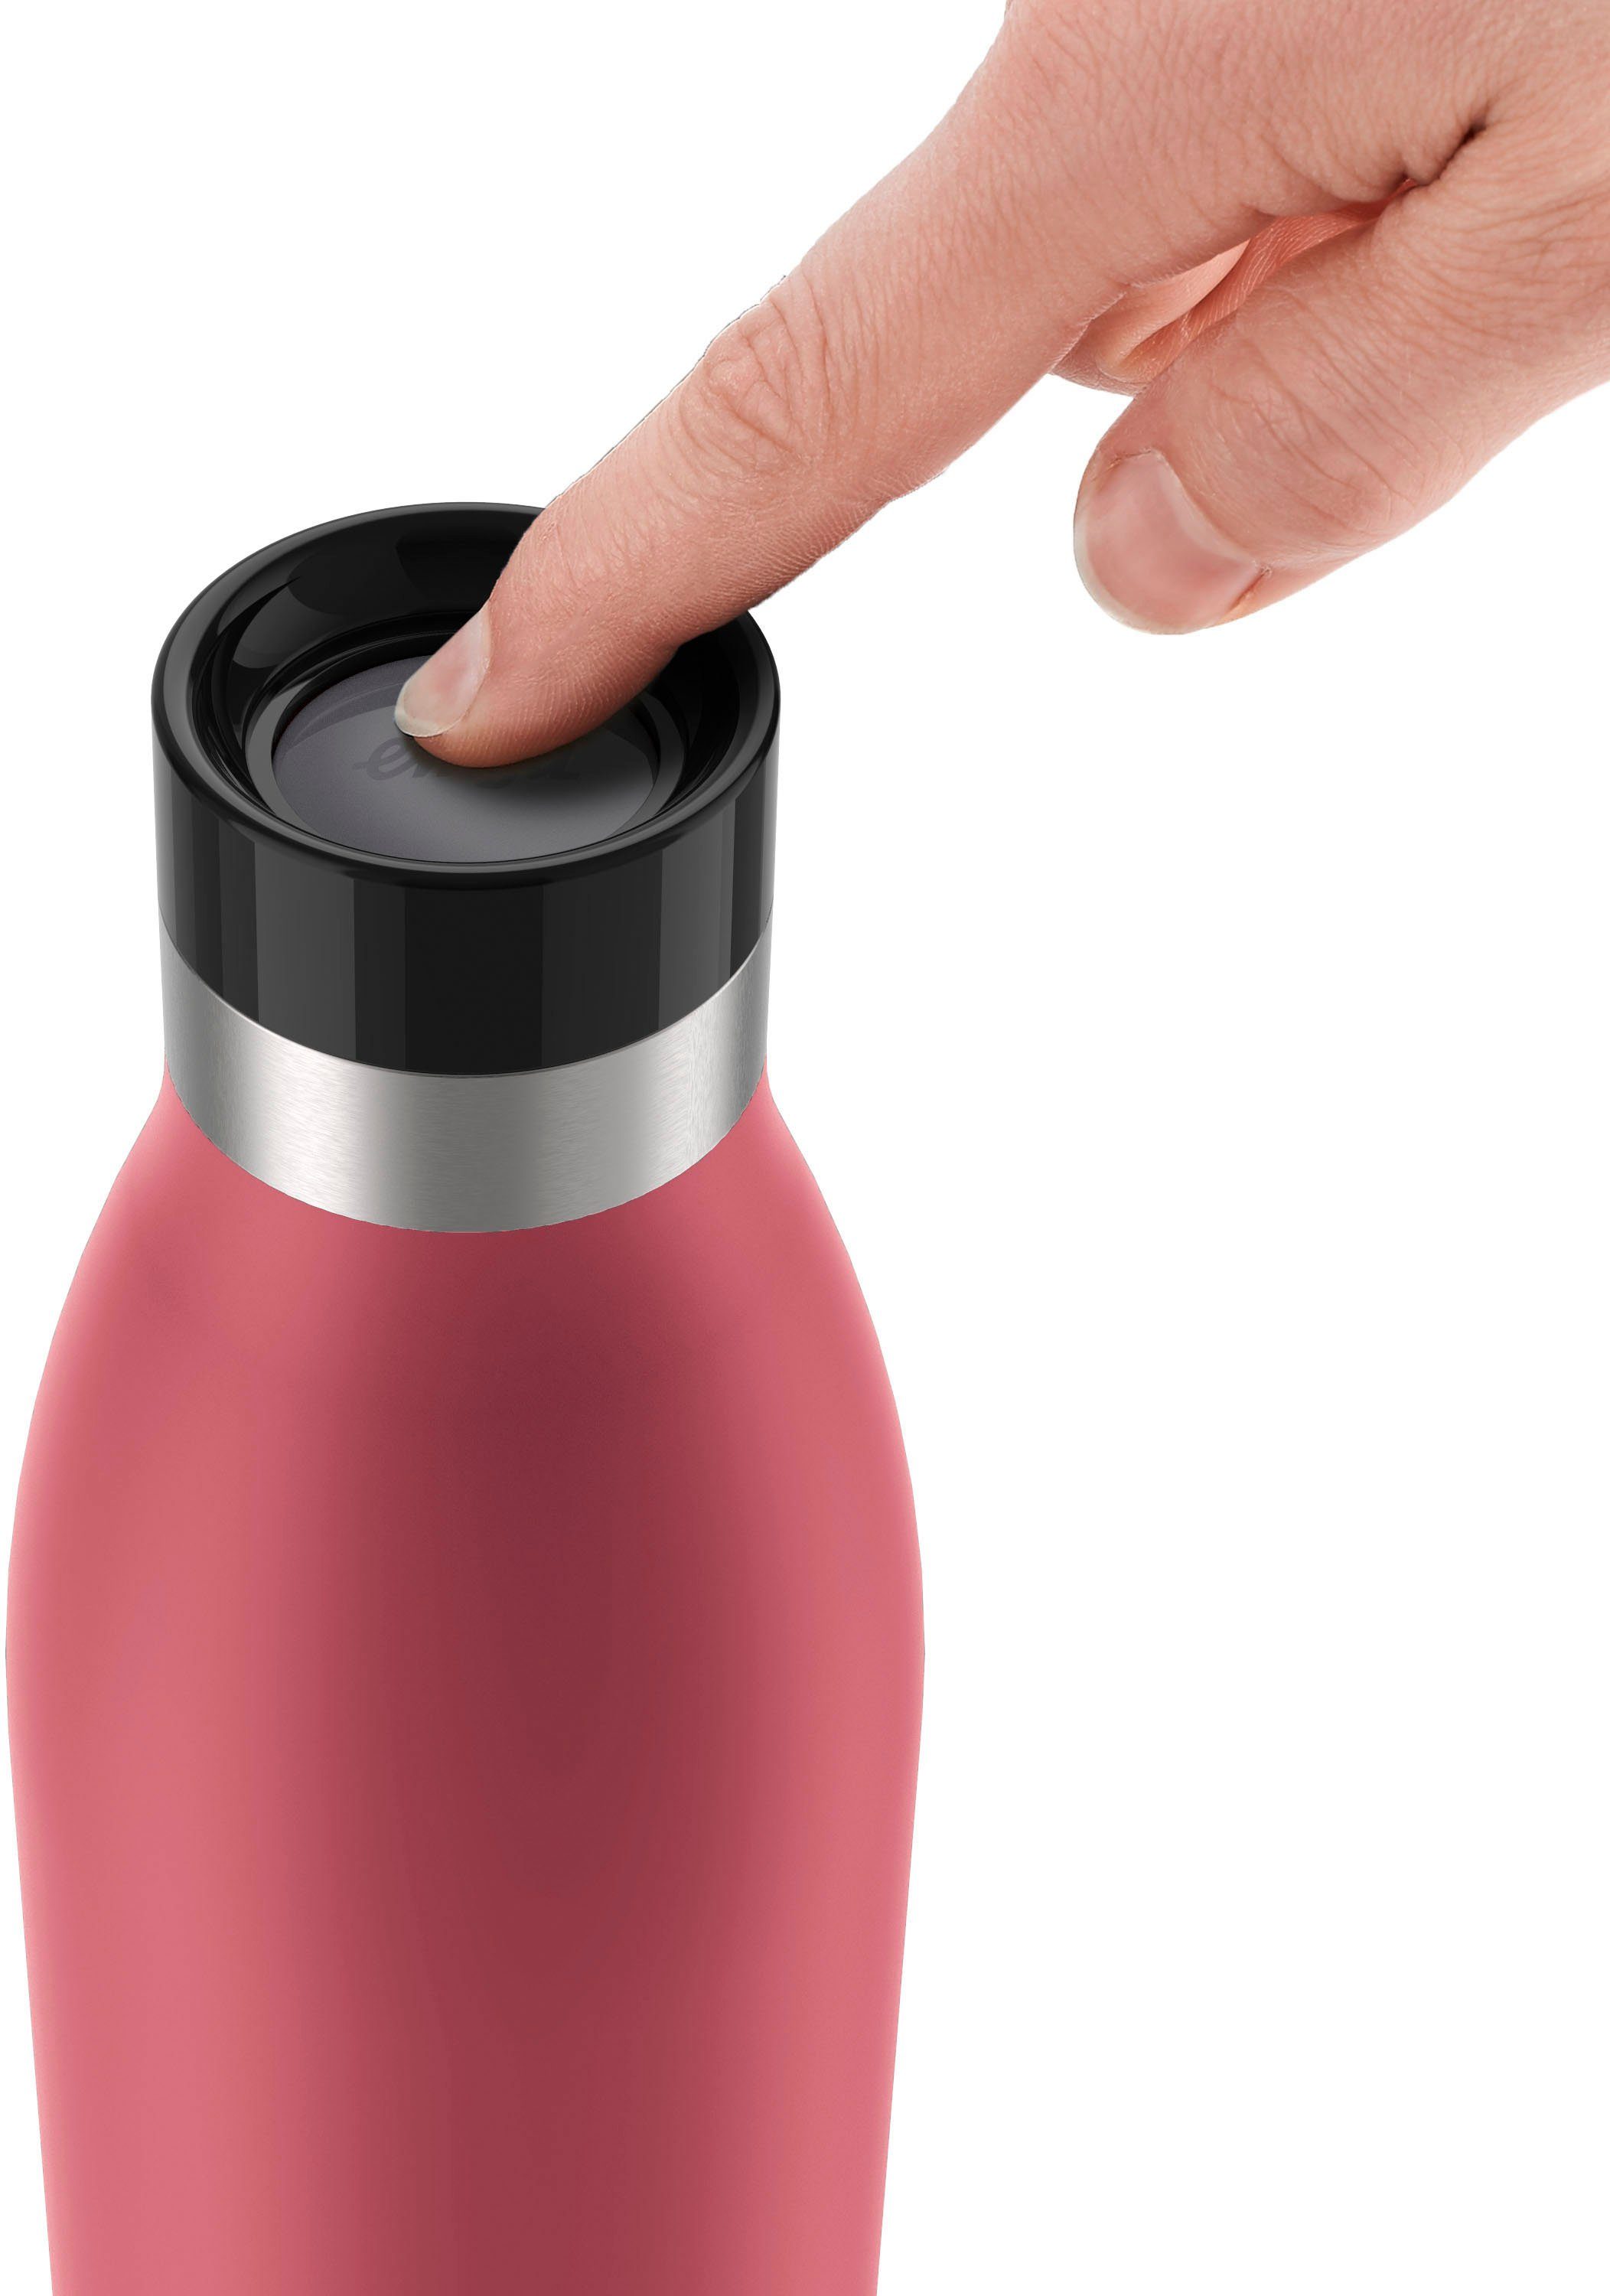 Emsa Isolierflasche Bludrop, 360° 24 kühl, Verschluss, 0,7 Trinkgenuss, L Quick-Press warm, Koralle h 12 h